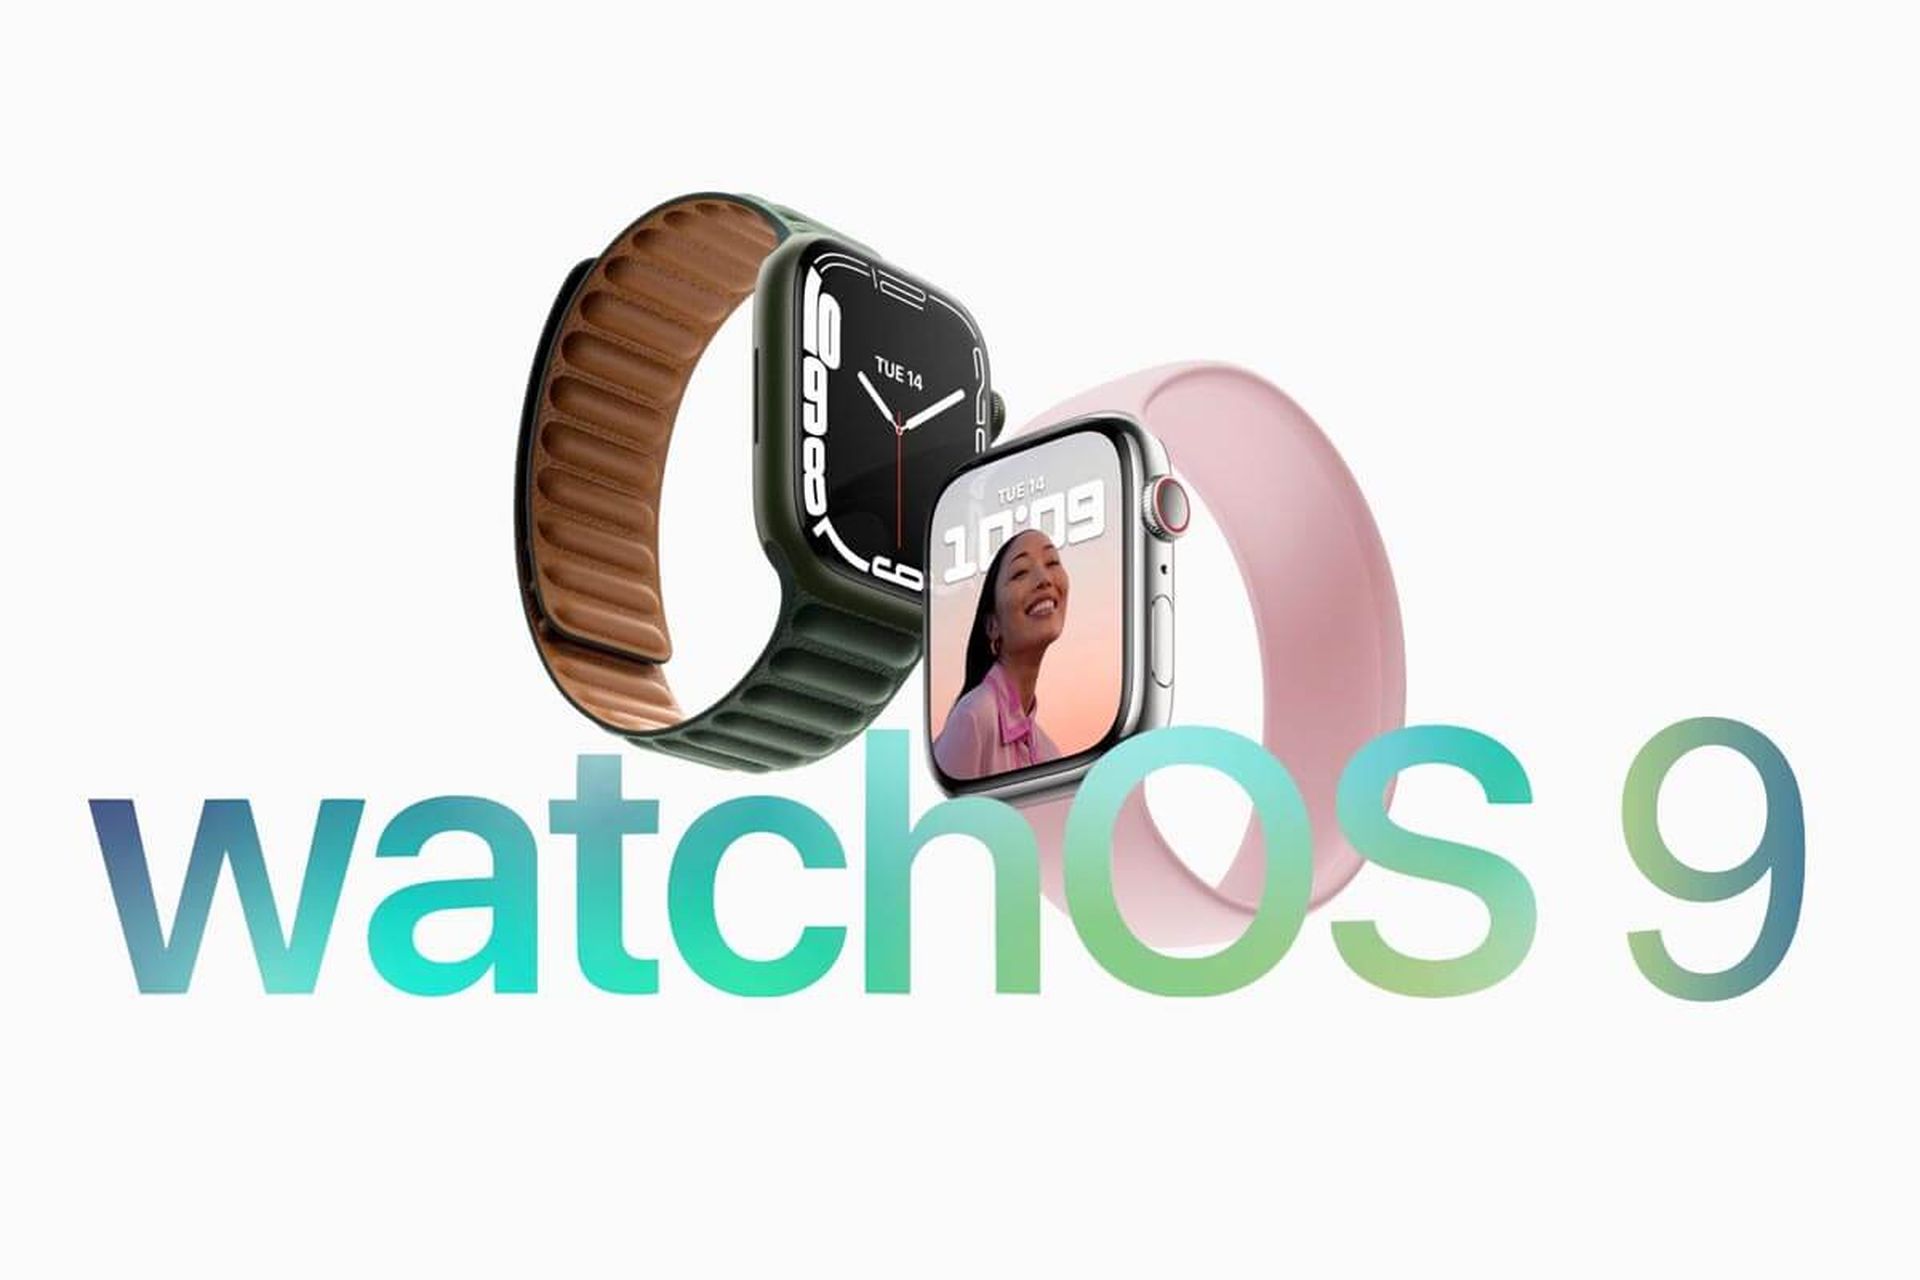 watchOS 9.2